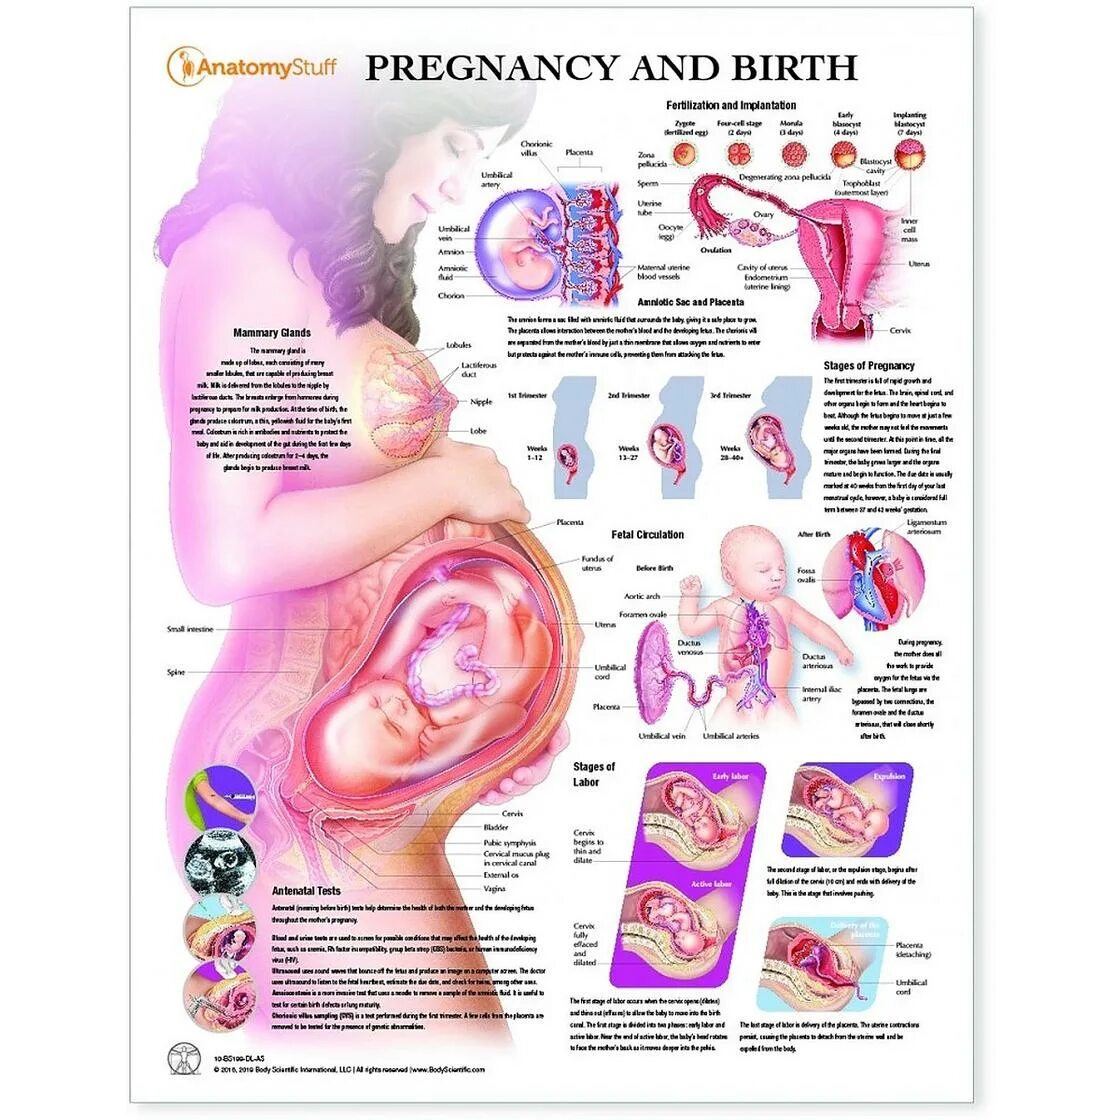 Положение ребенка в животе на 33 неделе беременности. Плод в животе матери схема. Положение органов на 32 неделе беременности. Эмбрион 34 недели беременности вес плода.